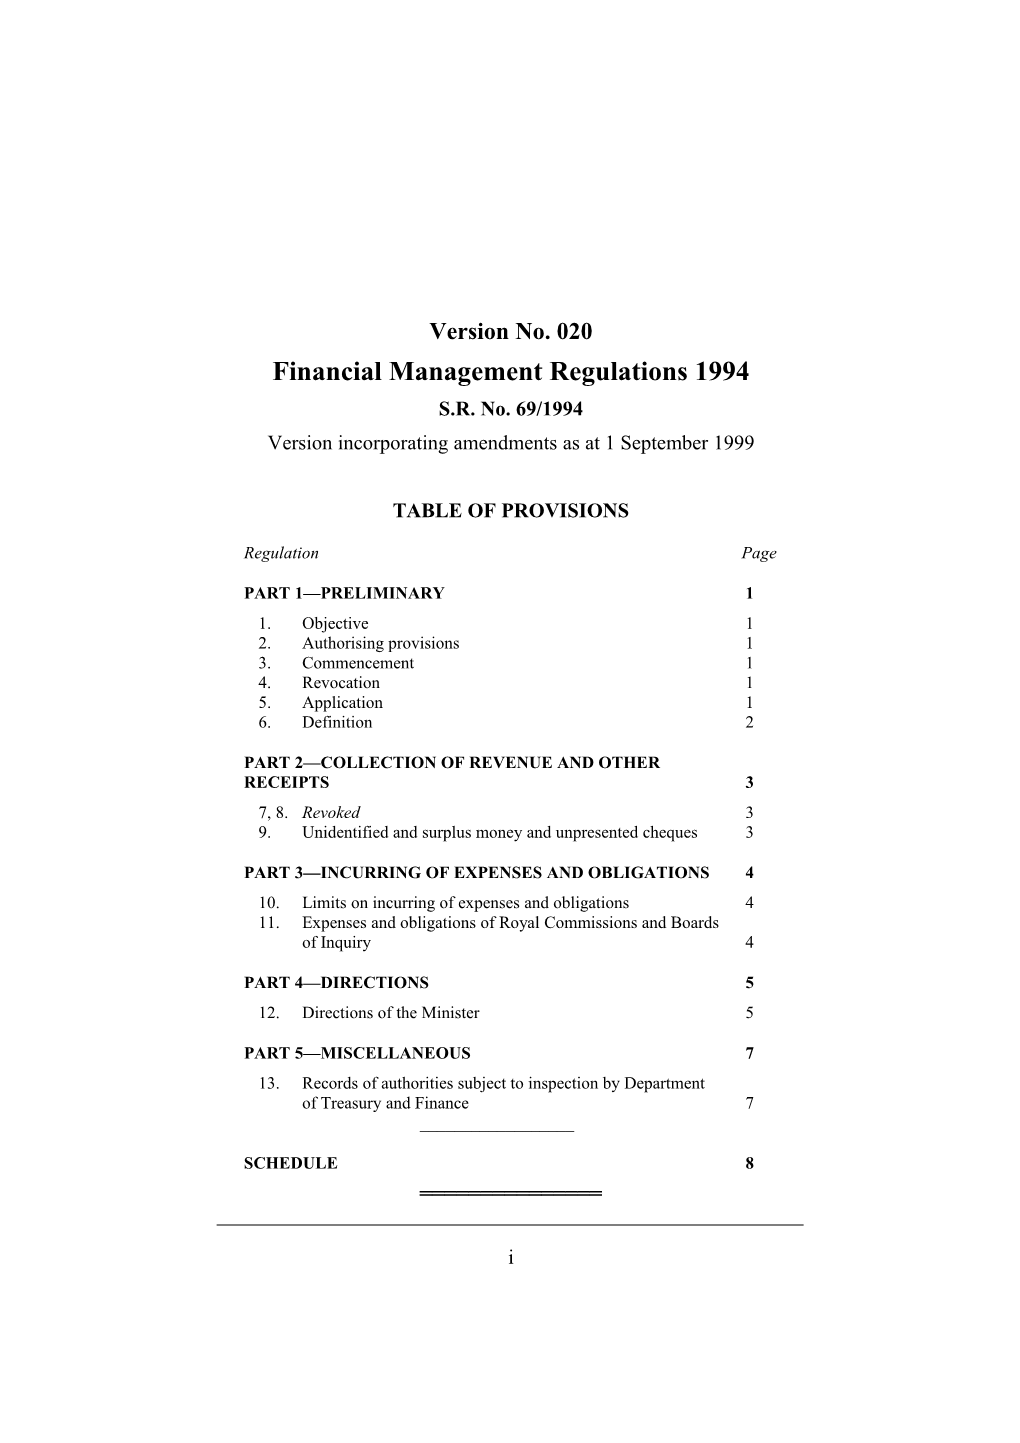 Financial Management Regulations 1994